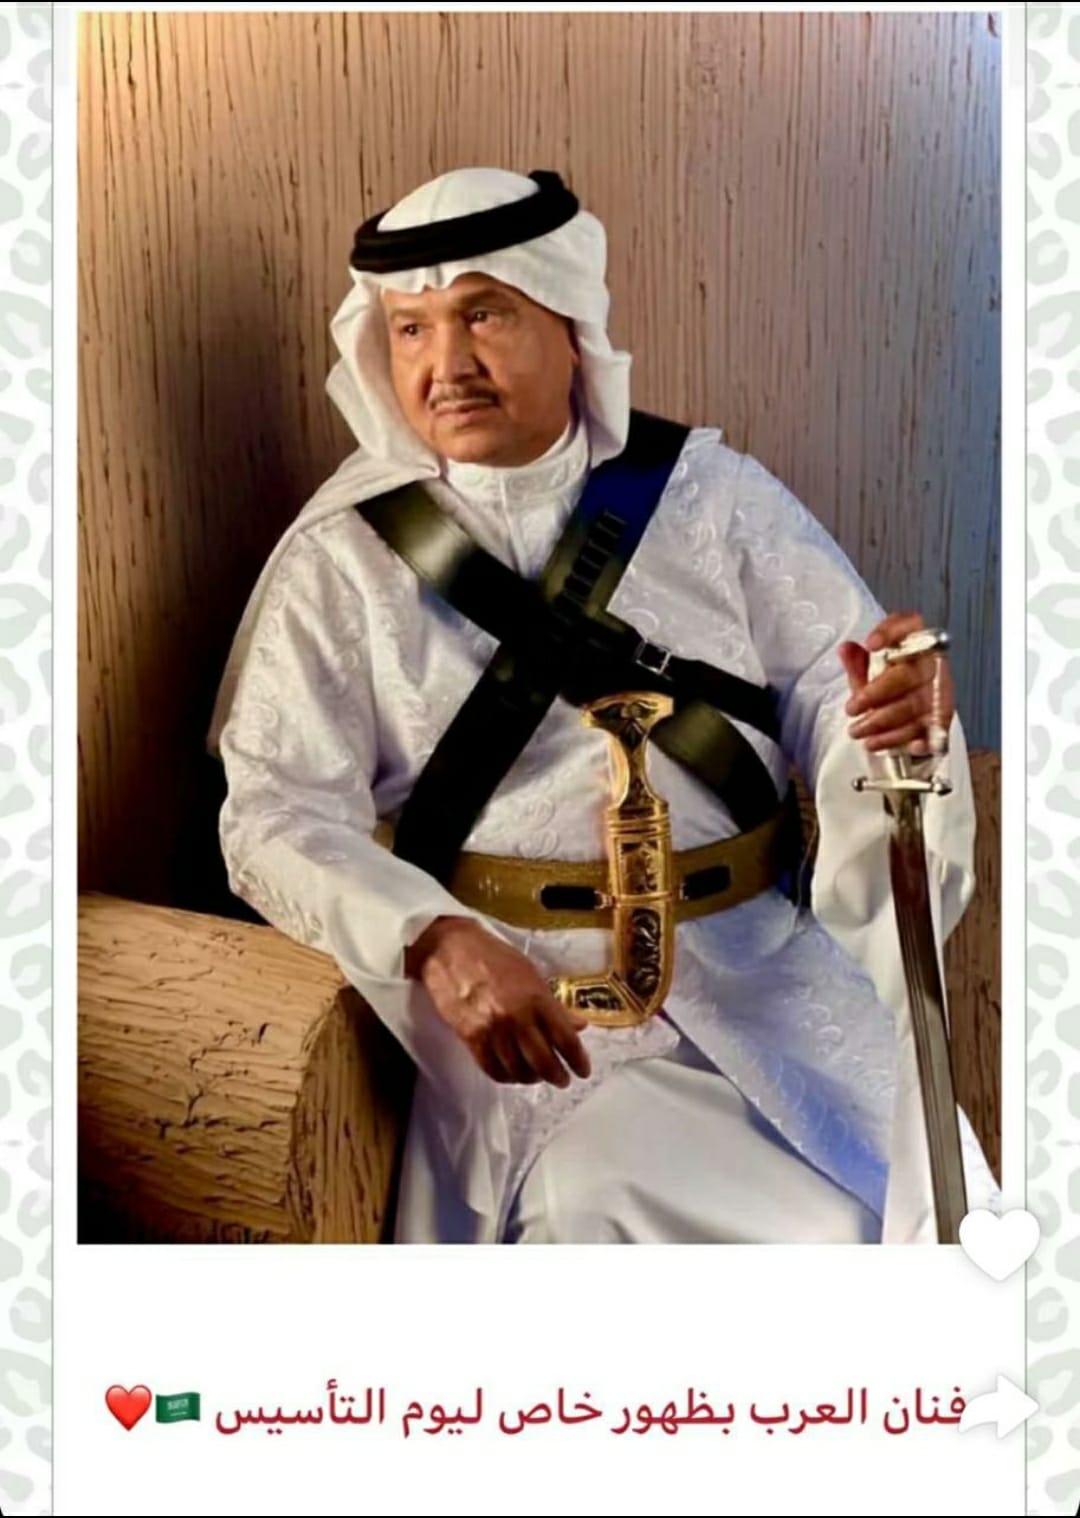 إحتفالا” بيوم التأسيس السعودي : محمد عبده يغني “قصة العوجا”